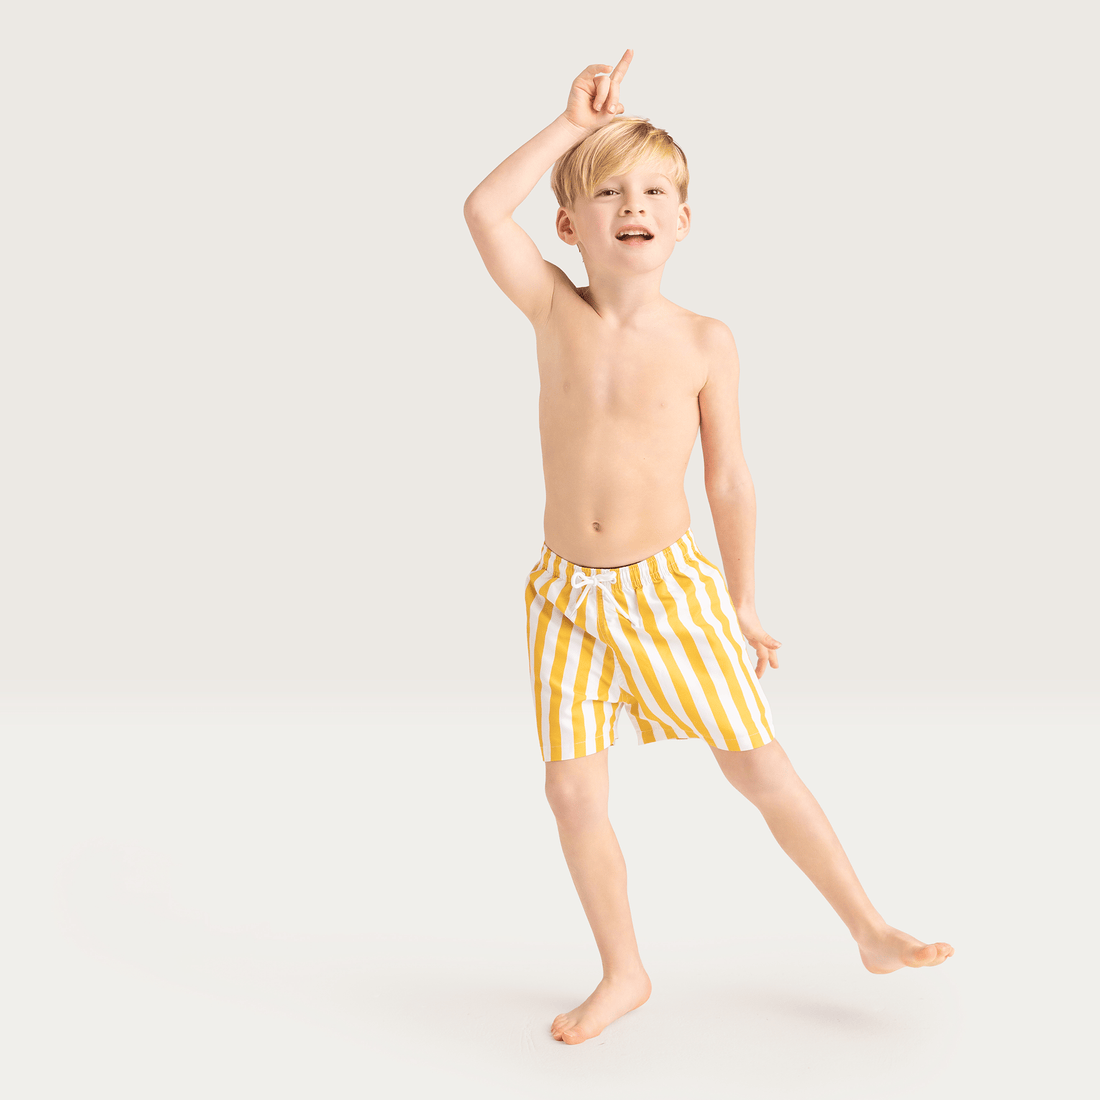 UV-zwemshort-jongens-geel-wit-gestreept-swim-essentials-3